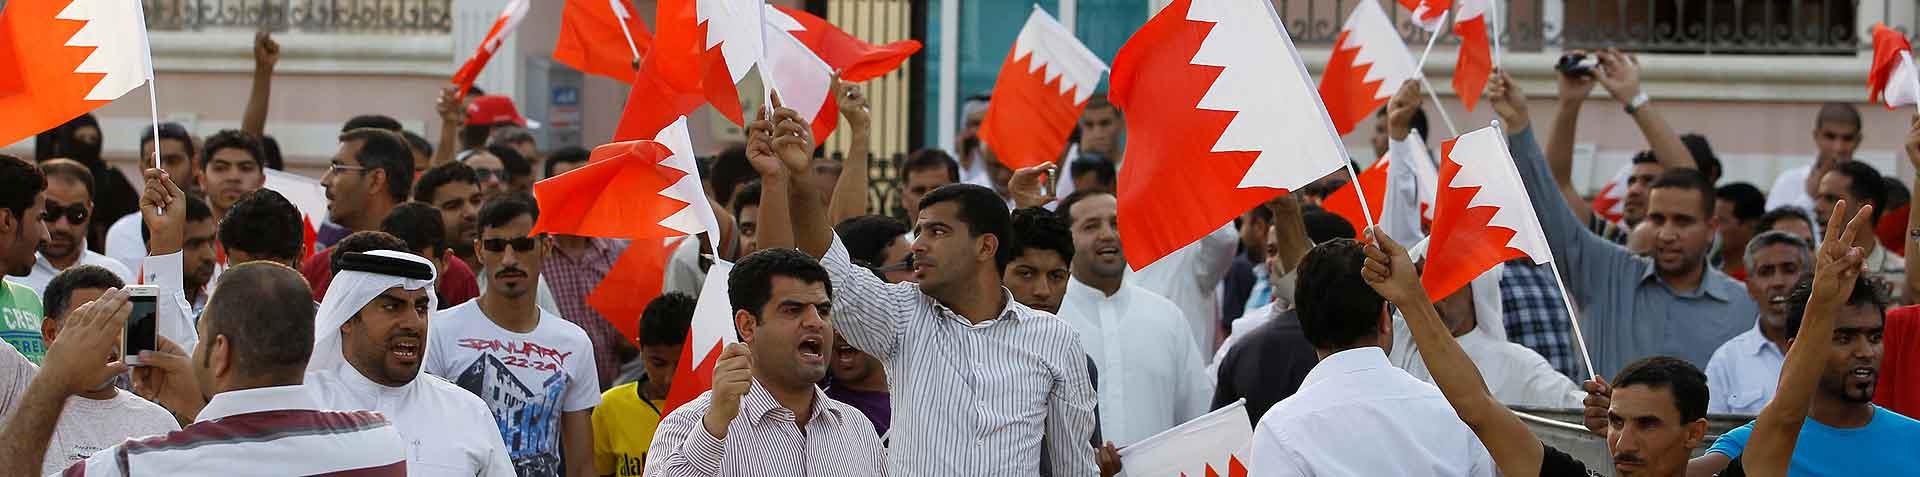 Bahrein clashes4